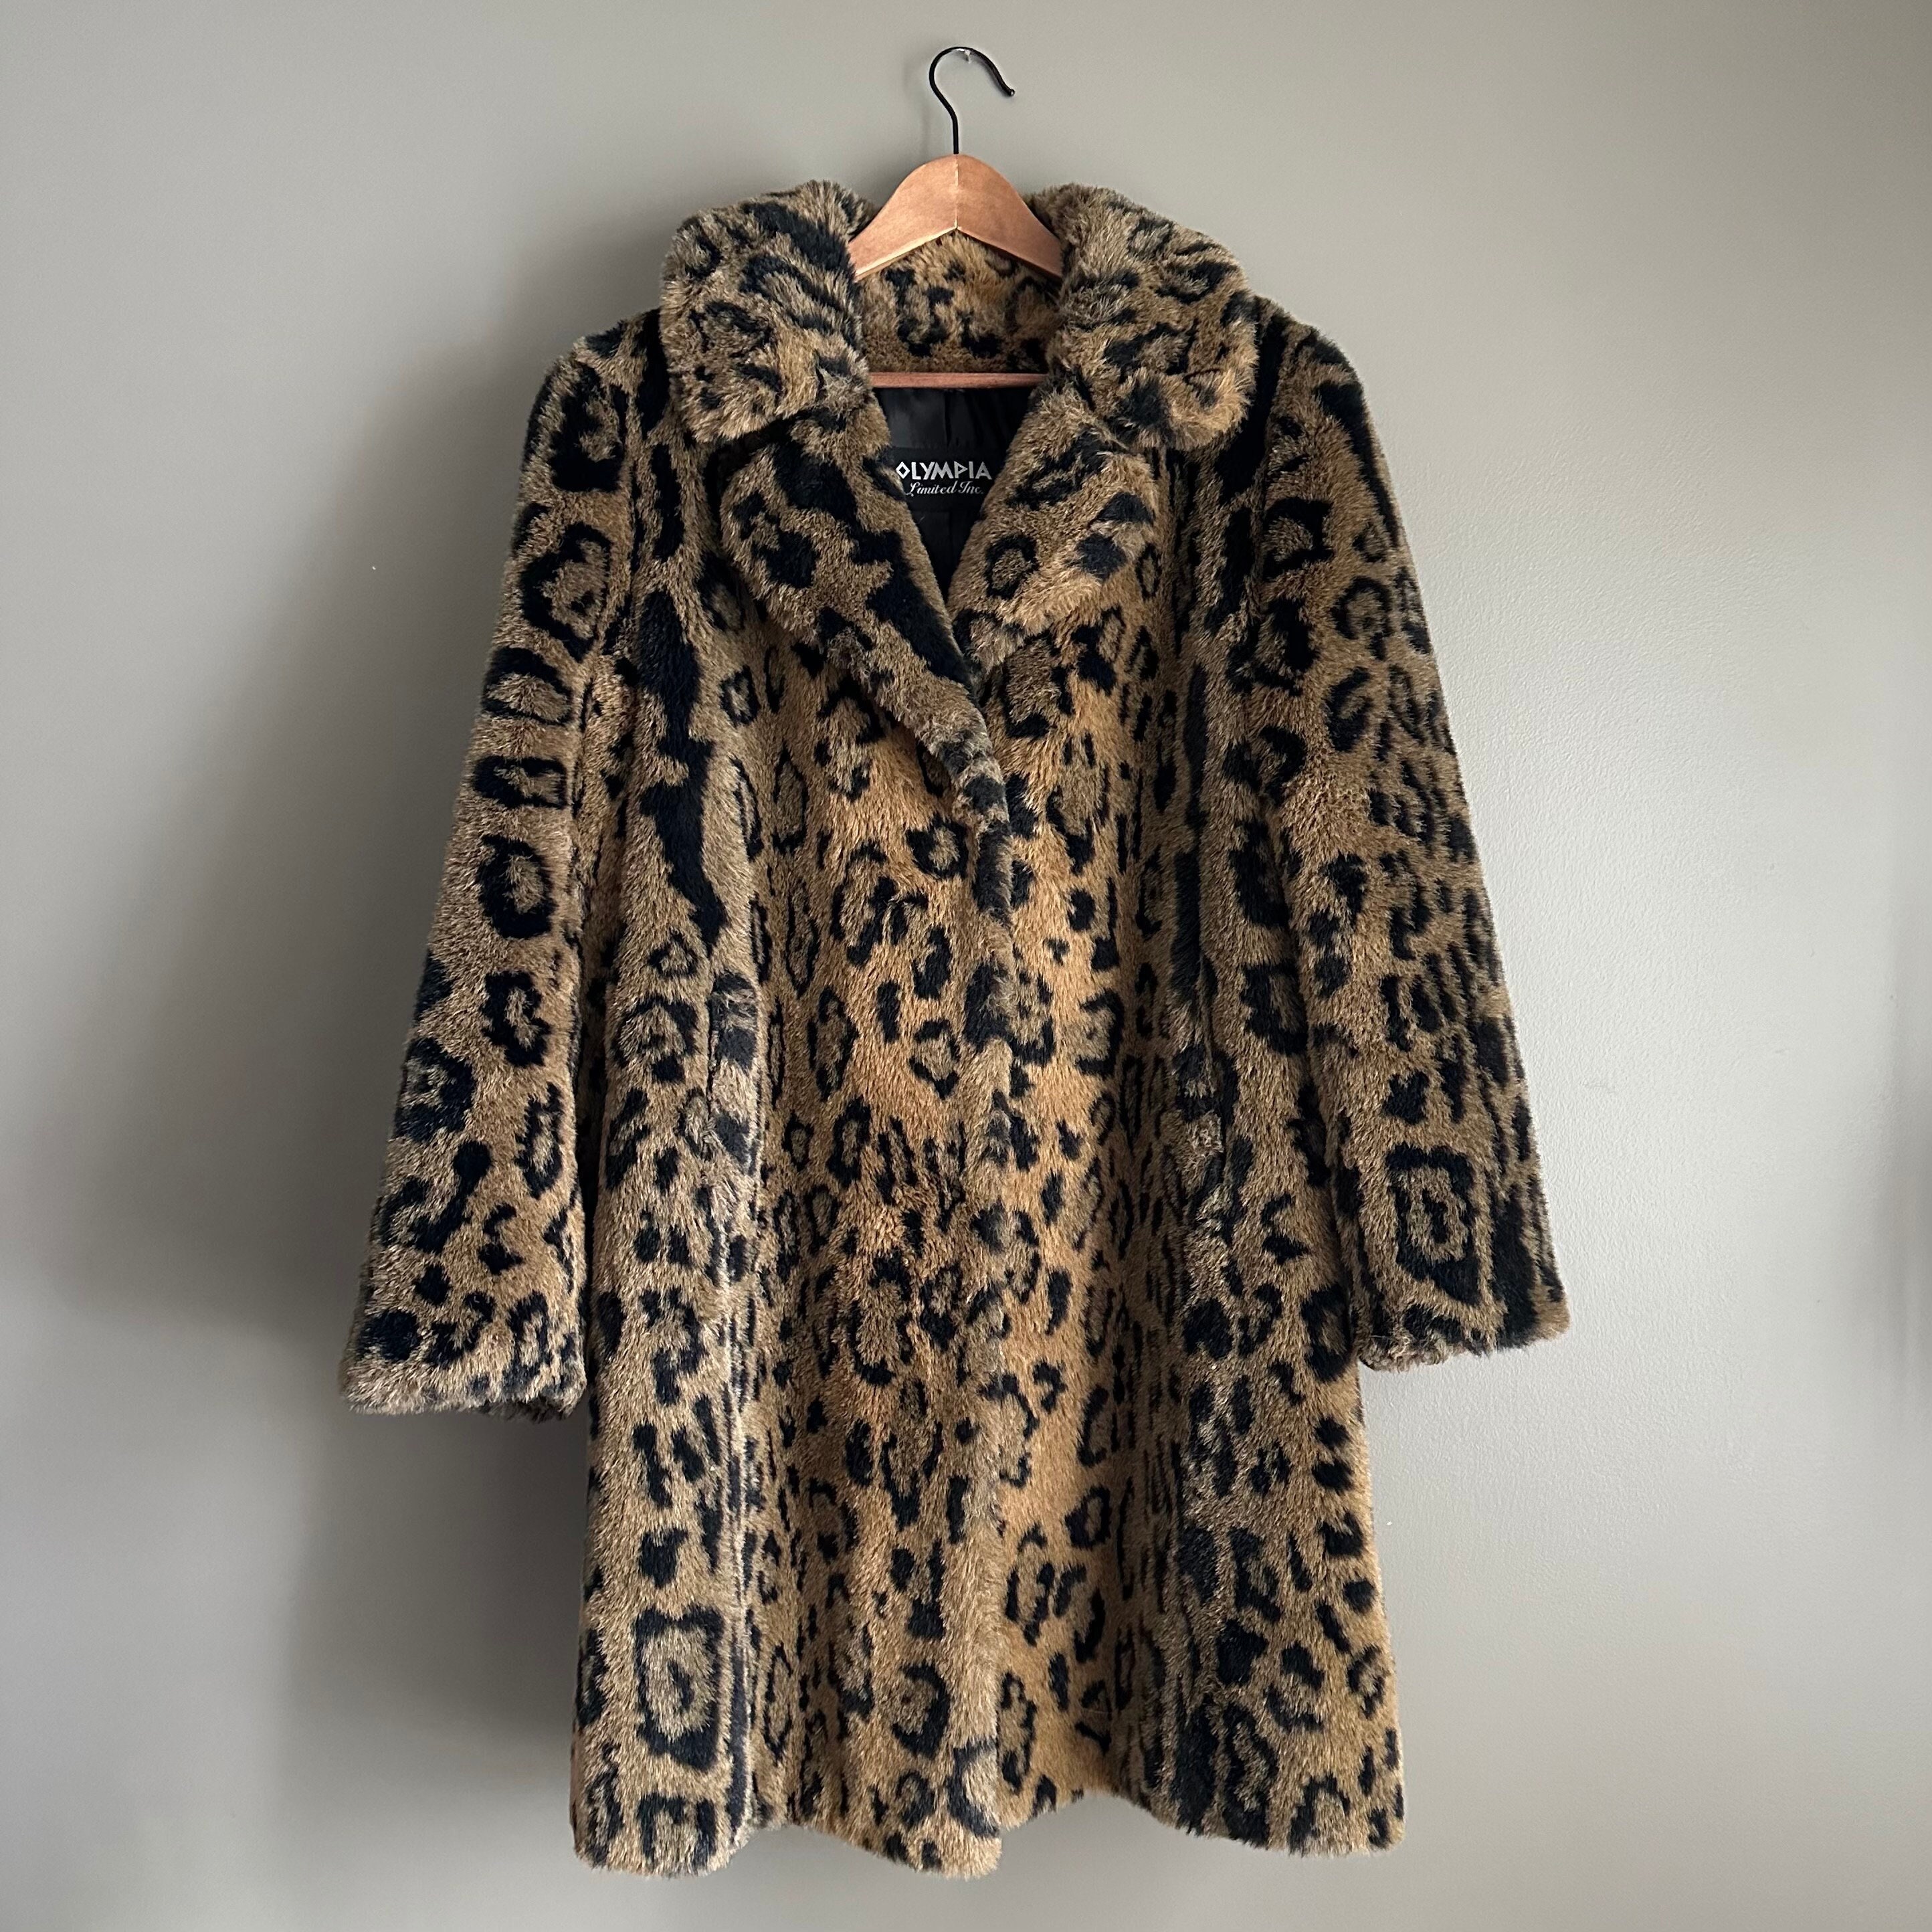 Leopard Print Faux Fur Coat, Animal Print Full Length Fake Fur Coat for  Women, Fluffy Boho Fur Coat, Vegan Fur, Belted Beige Faux Fur Coat 